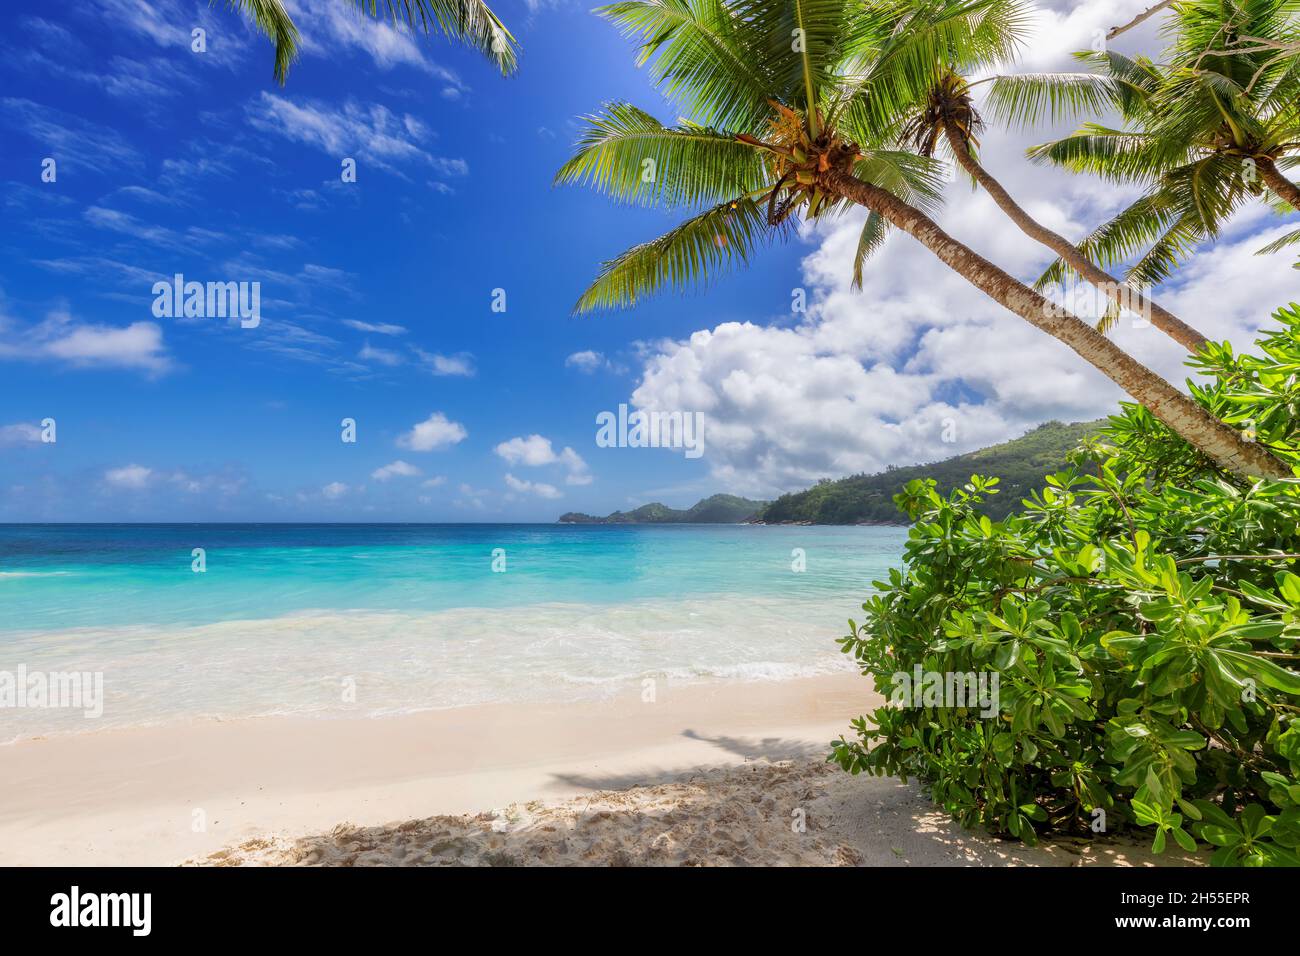 Spiaggia tropicale. Palme e sabbia bianca sull'isola caraibica Foto Stock